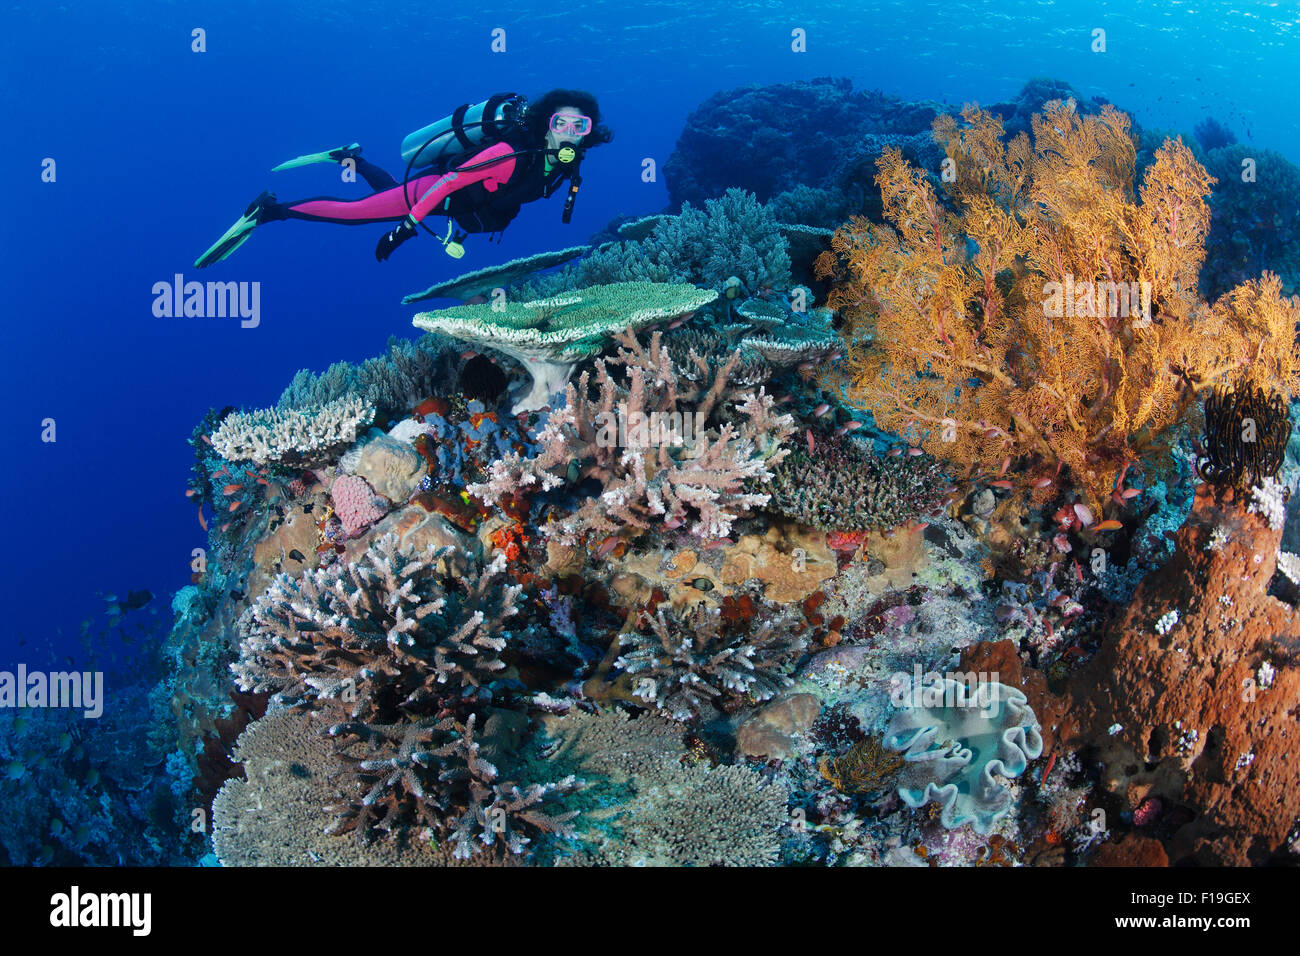 Px0307-D. scuba diver (modèle) parution sur nage santé des récifs de corail, avec une variété de coraux durs, coraux mous, et d'éponges. Banque D'Images